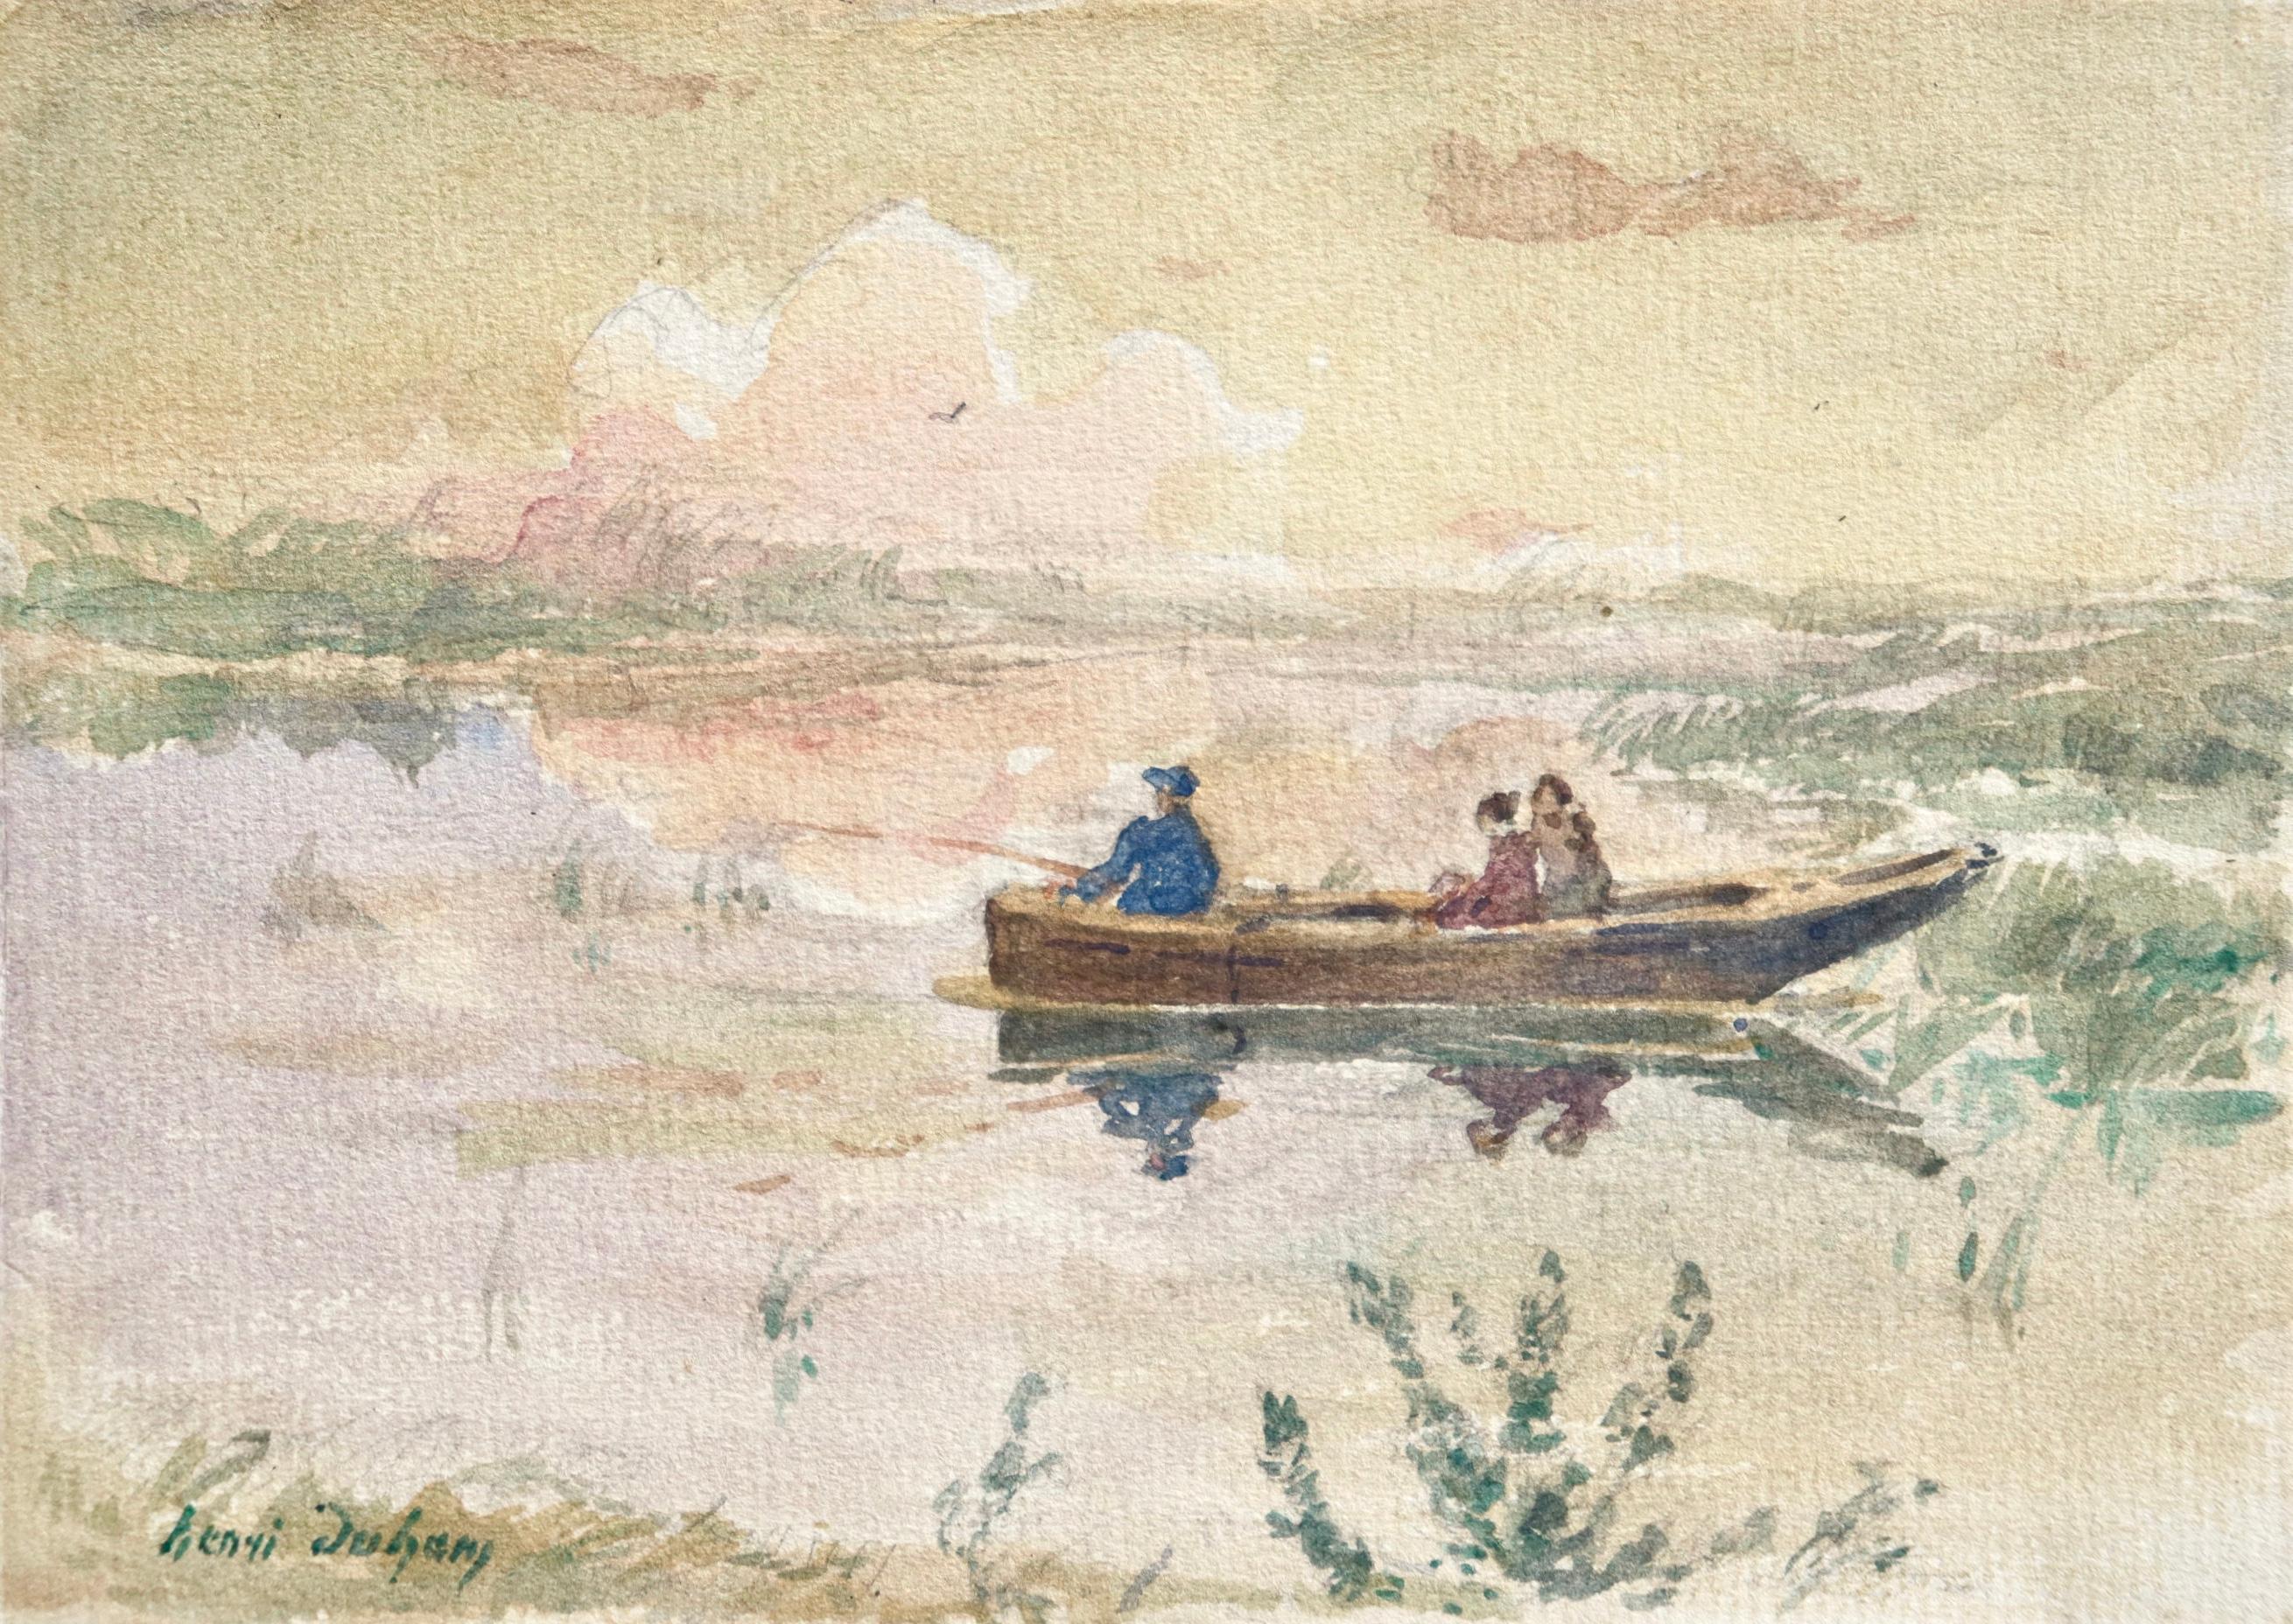 Aquarell auf Papier um 1910, aber Französisch impressionistischen Maler Henri Duhem Darstellung von Figuren in einem Boot mit einem hält eine Angelrute. Das Licht ist schwach und die Wolken spiegeln sich im Wasser. Signiert unten links. Dieses Stück